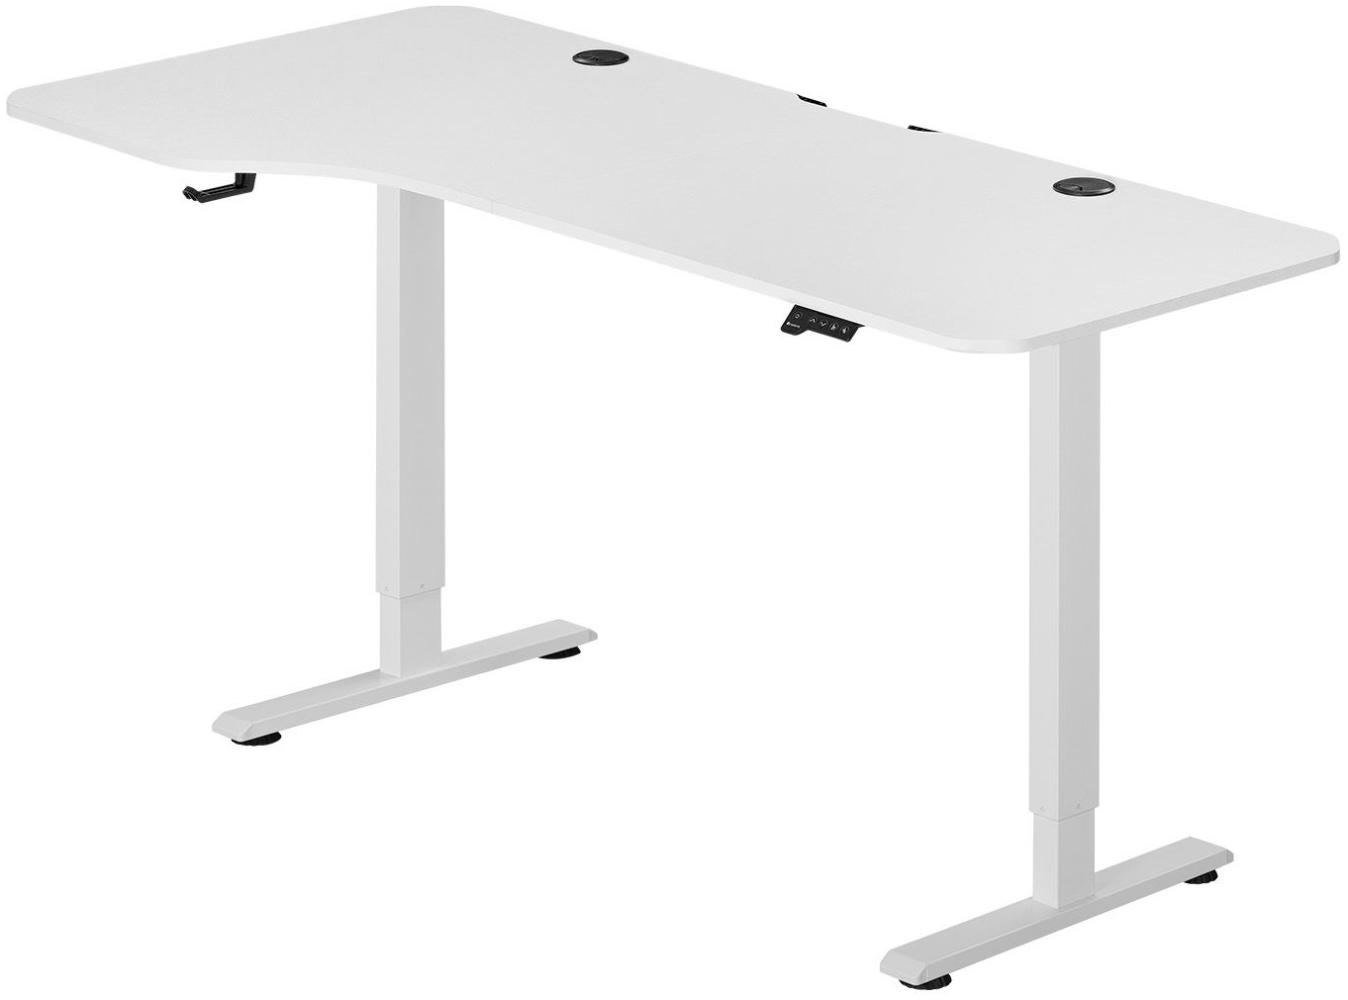 Juskys Höhenverstellbarer Schreibtisch, Metall, Holz, weiß, 160 x 75 cm Bild 1